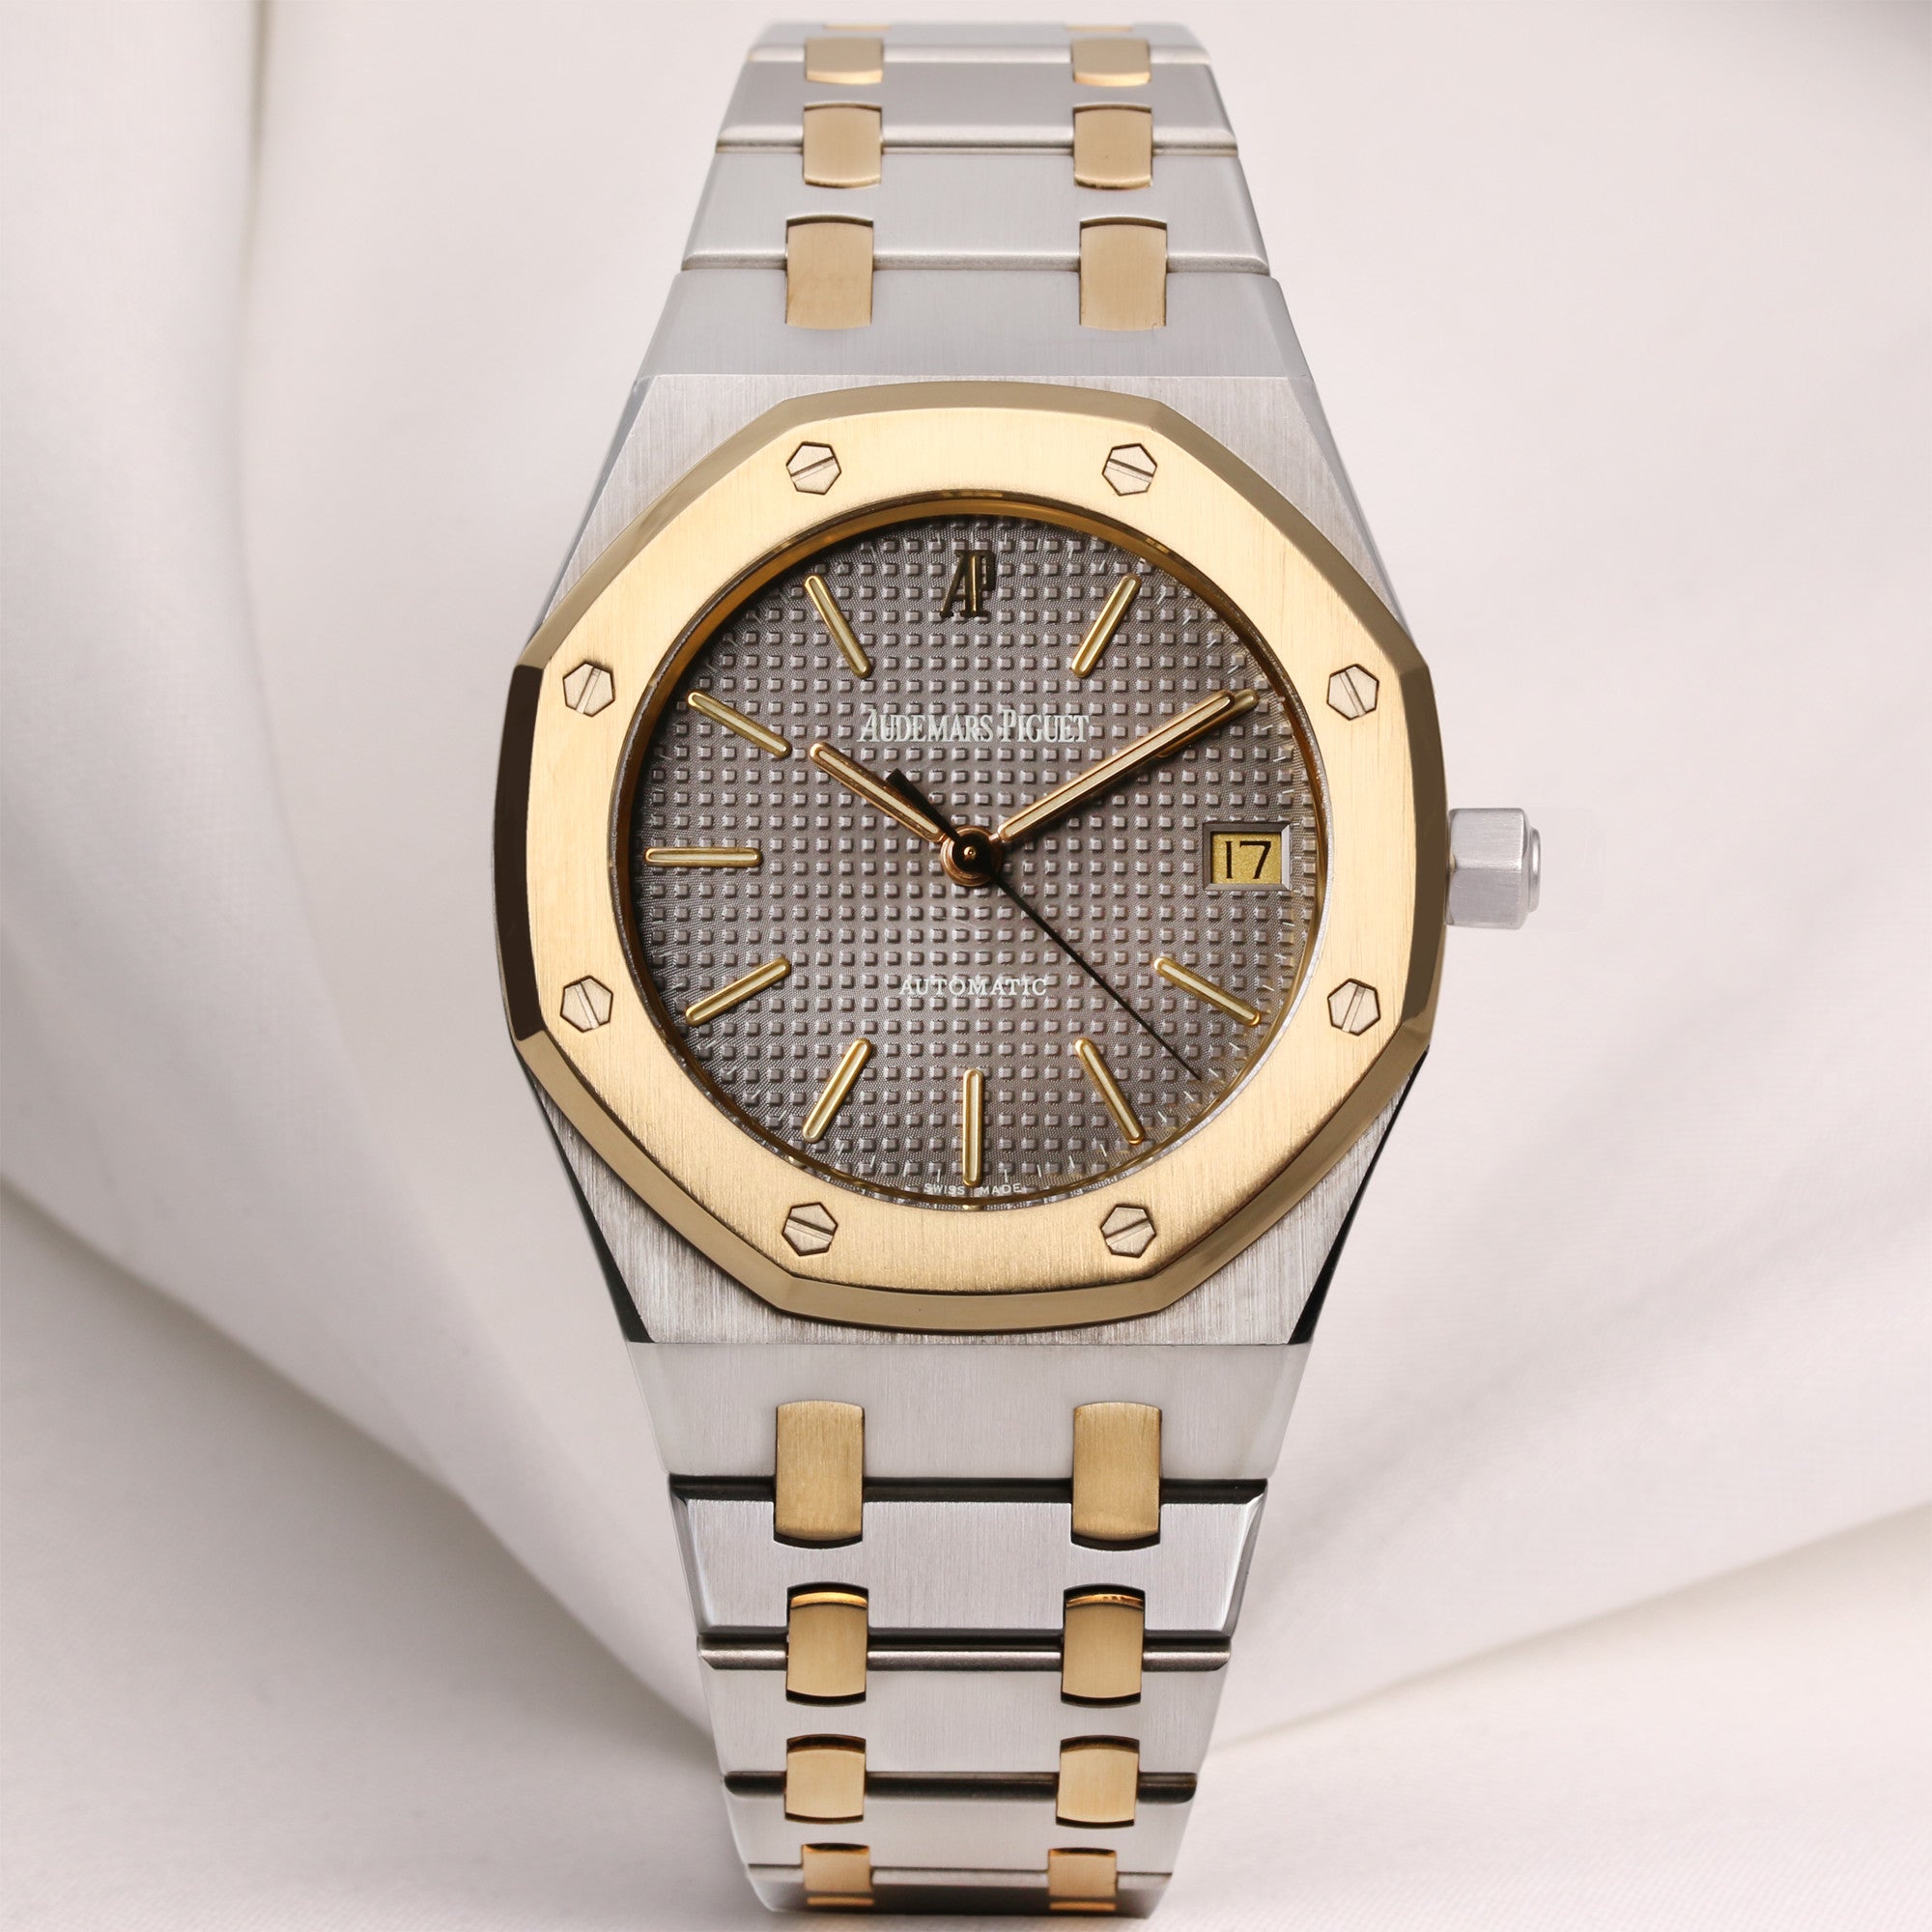 Audemars Piguet Royal Oak, A Yellow Gold and Stainless Quartz Wristwatch, Mens Watch